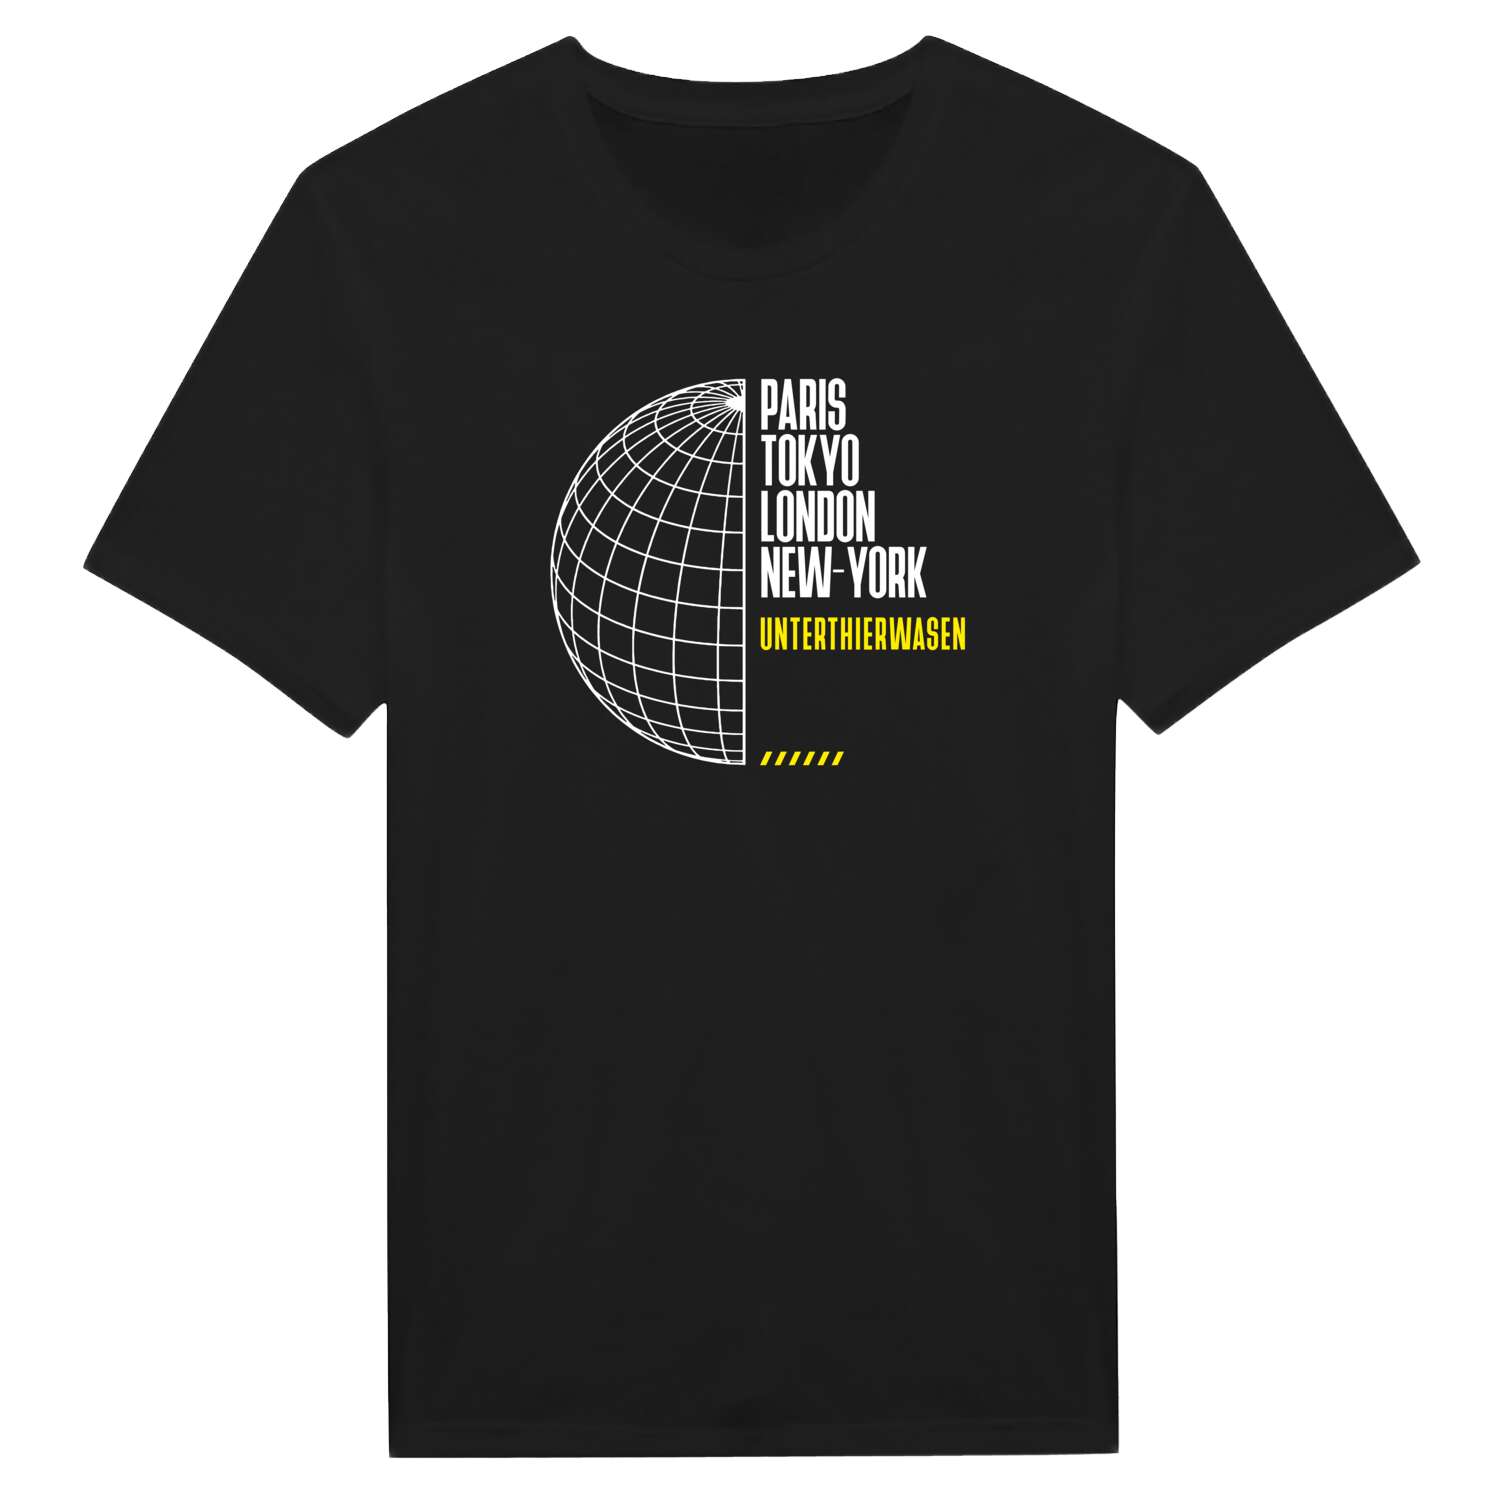 Unterthierwasen T-Shirt »Paris Tokyo London«